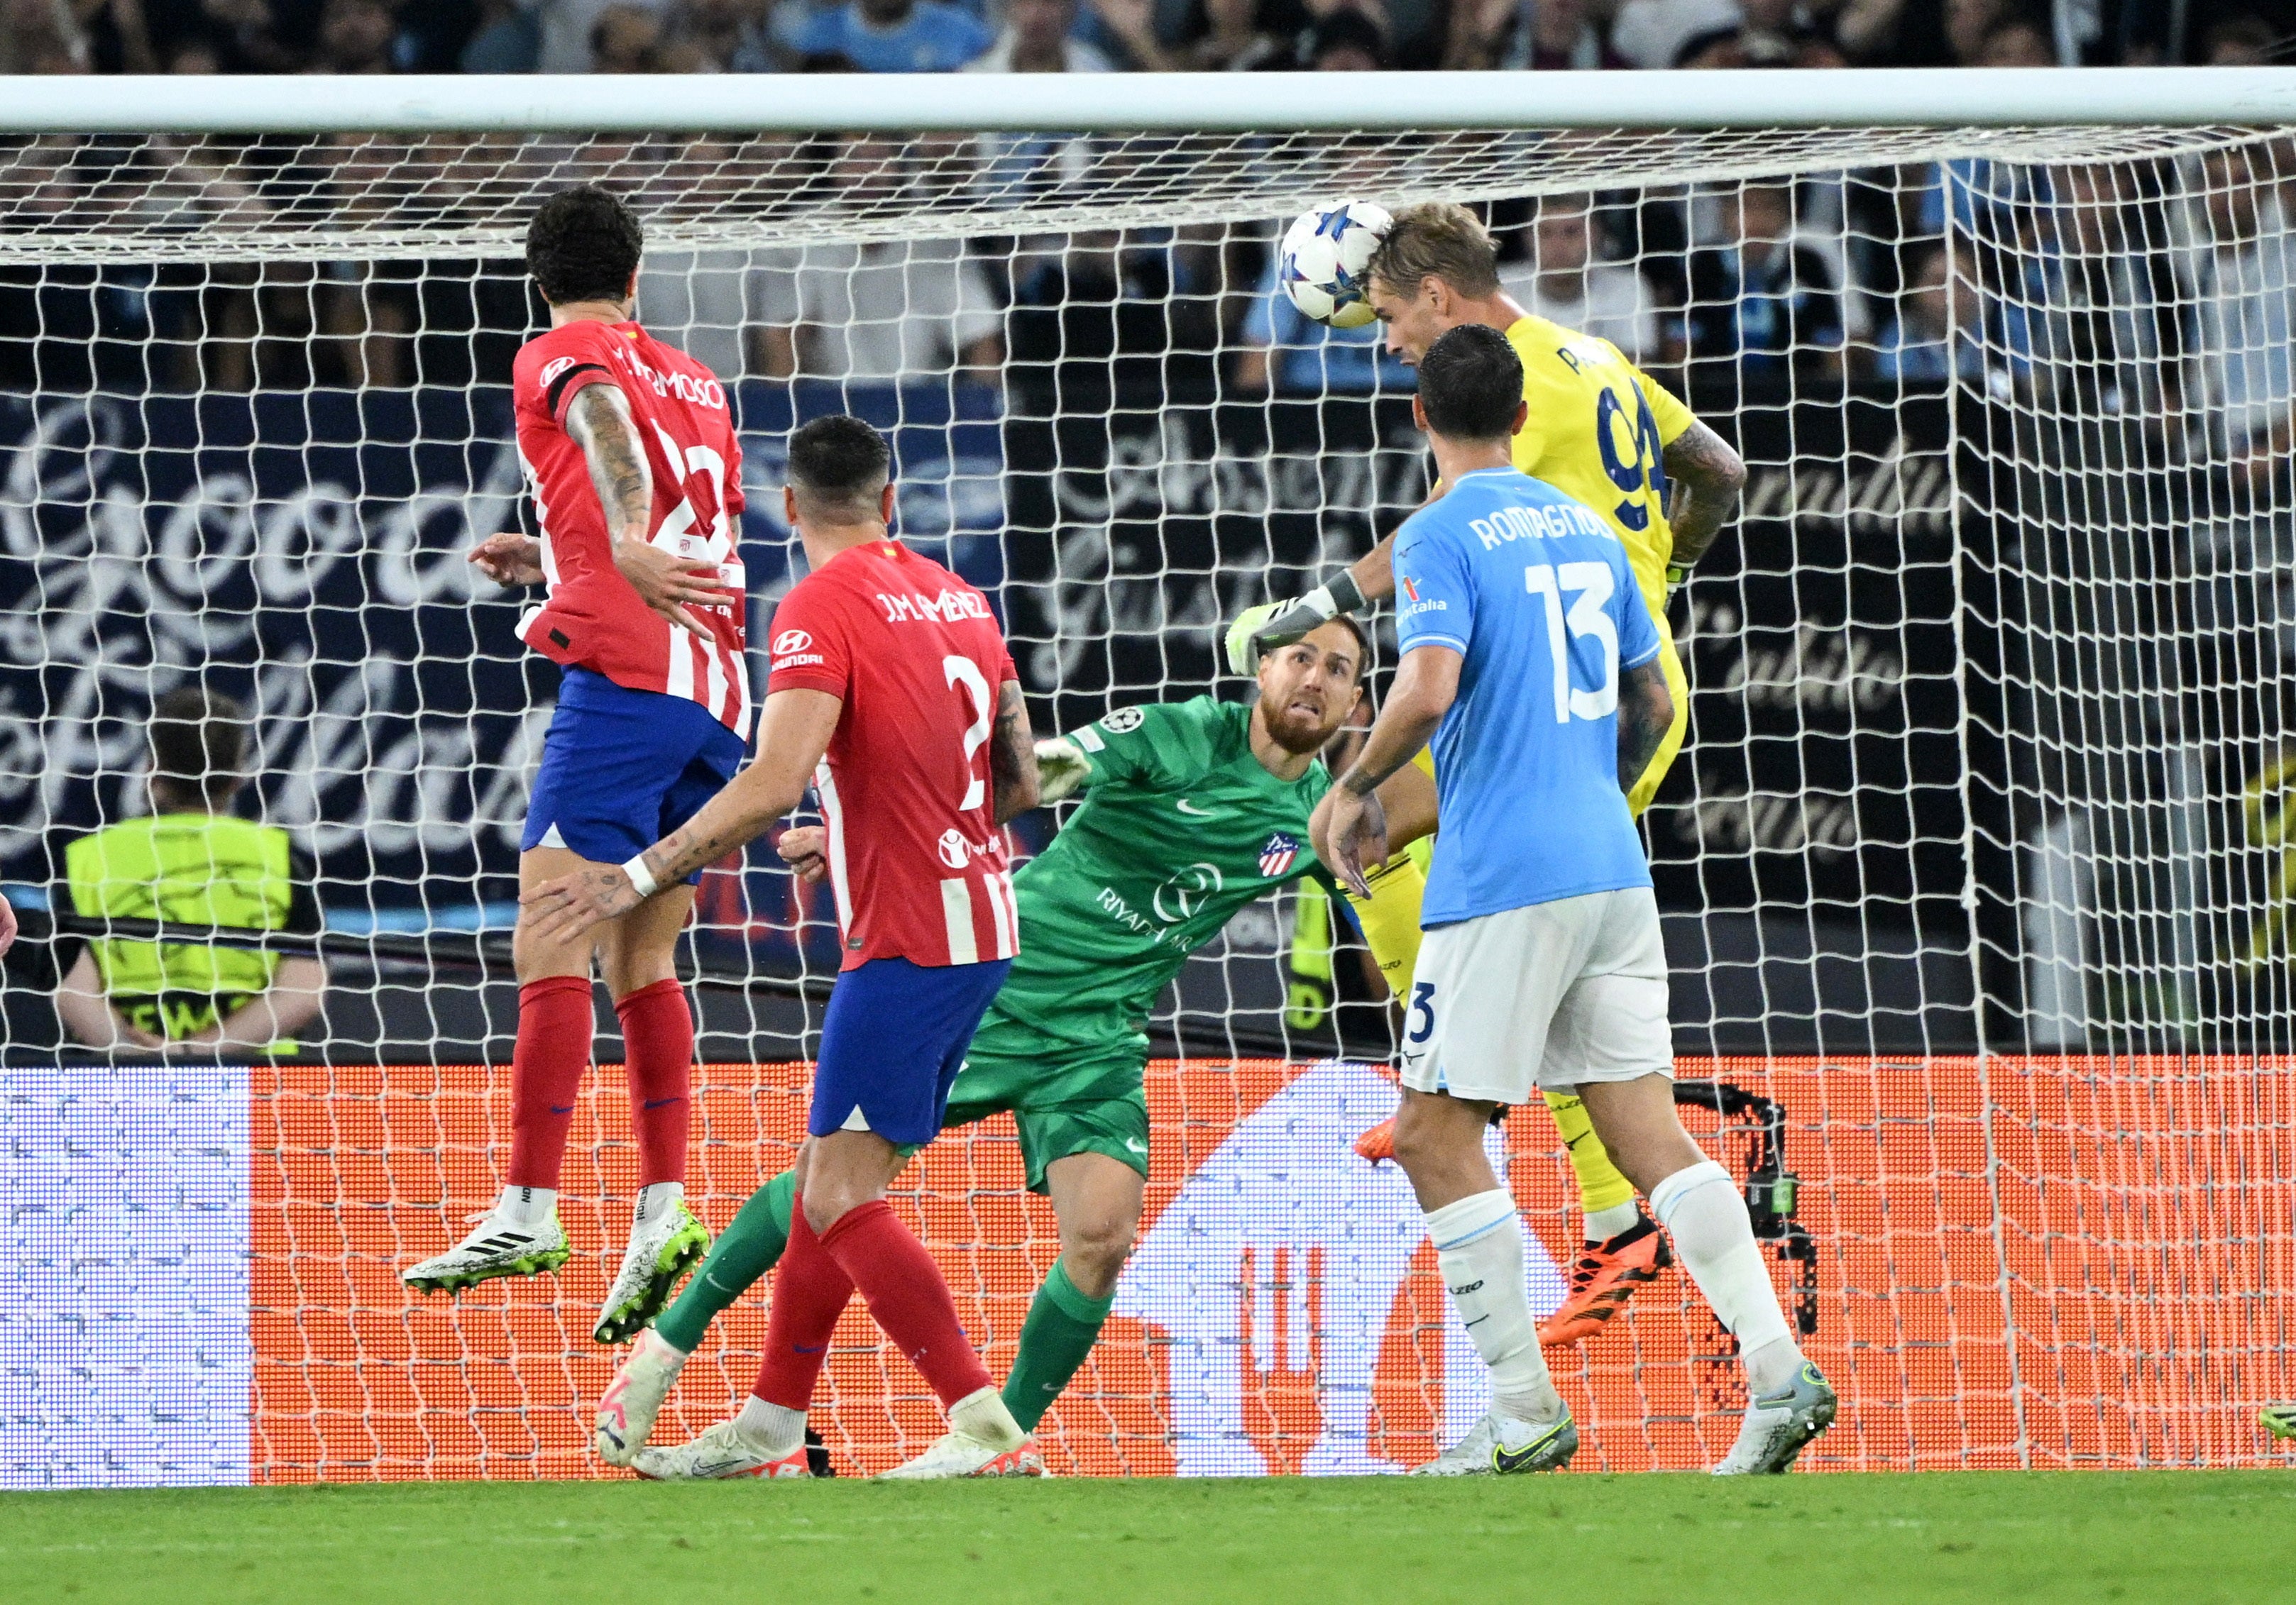 <p>Ivan Provedel rises to score for Lazio </p>